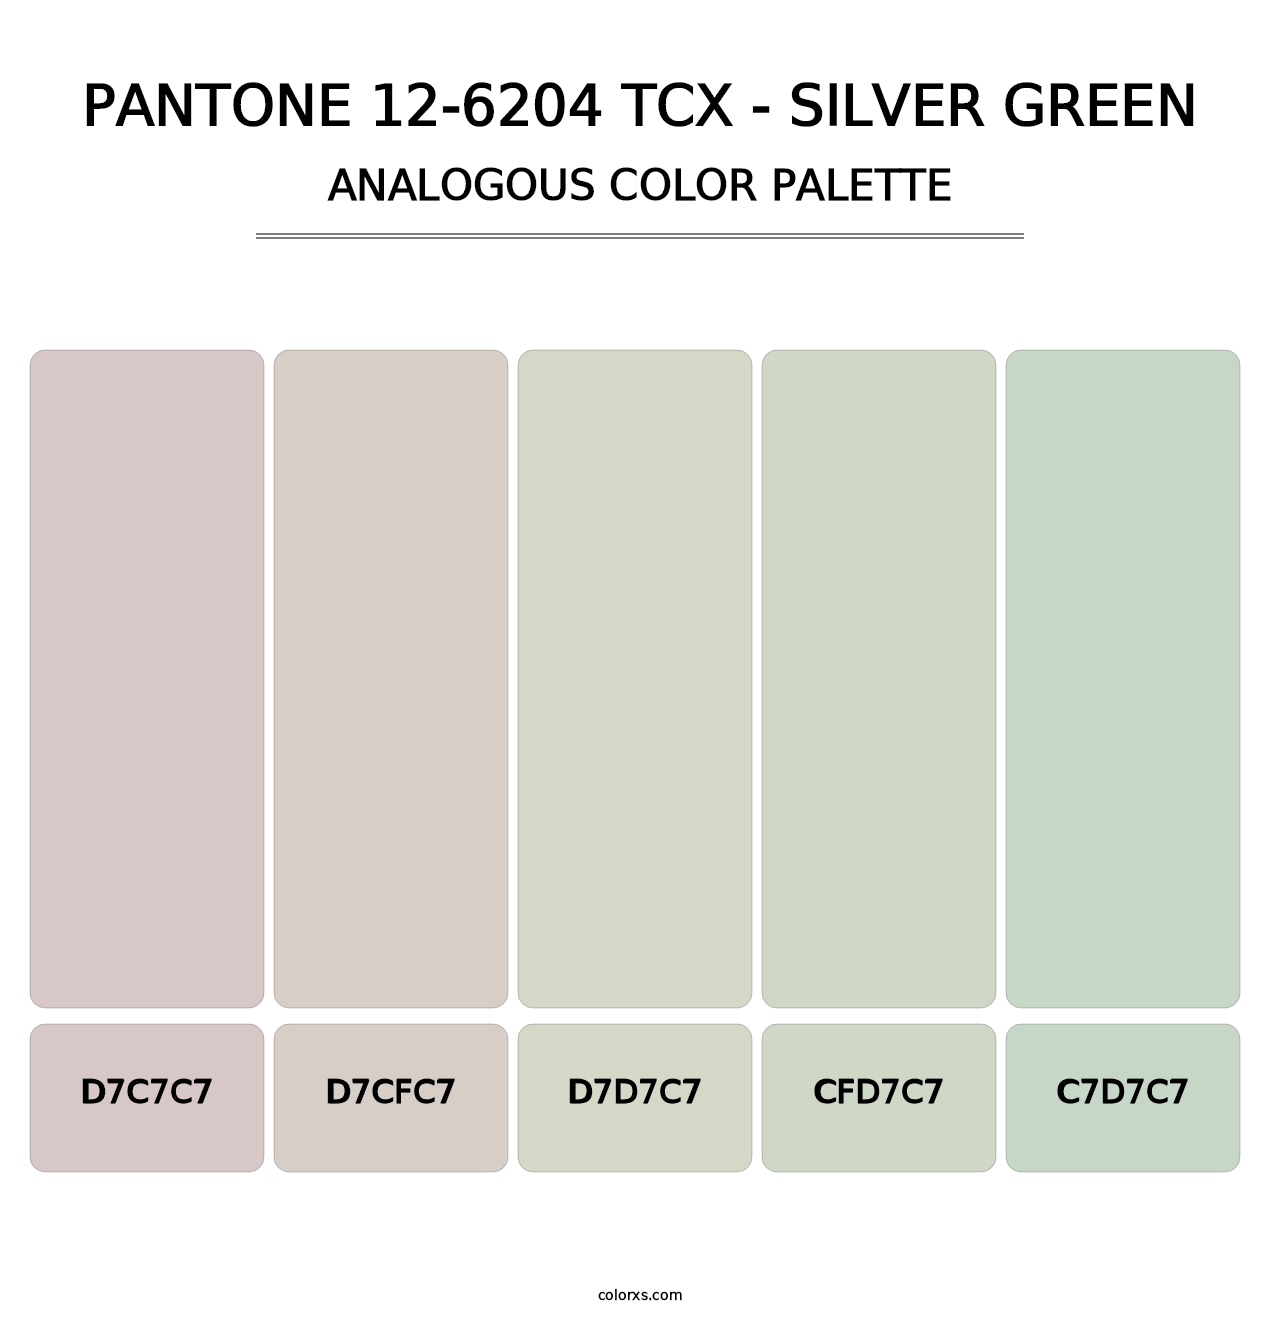 PANTONE 12-6204 TCX - Silver Green - Analogous Color Palette